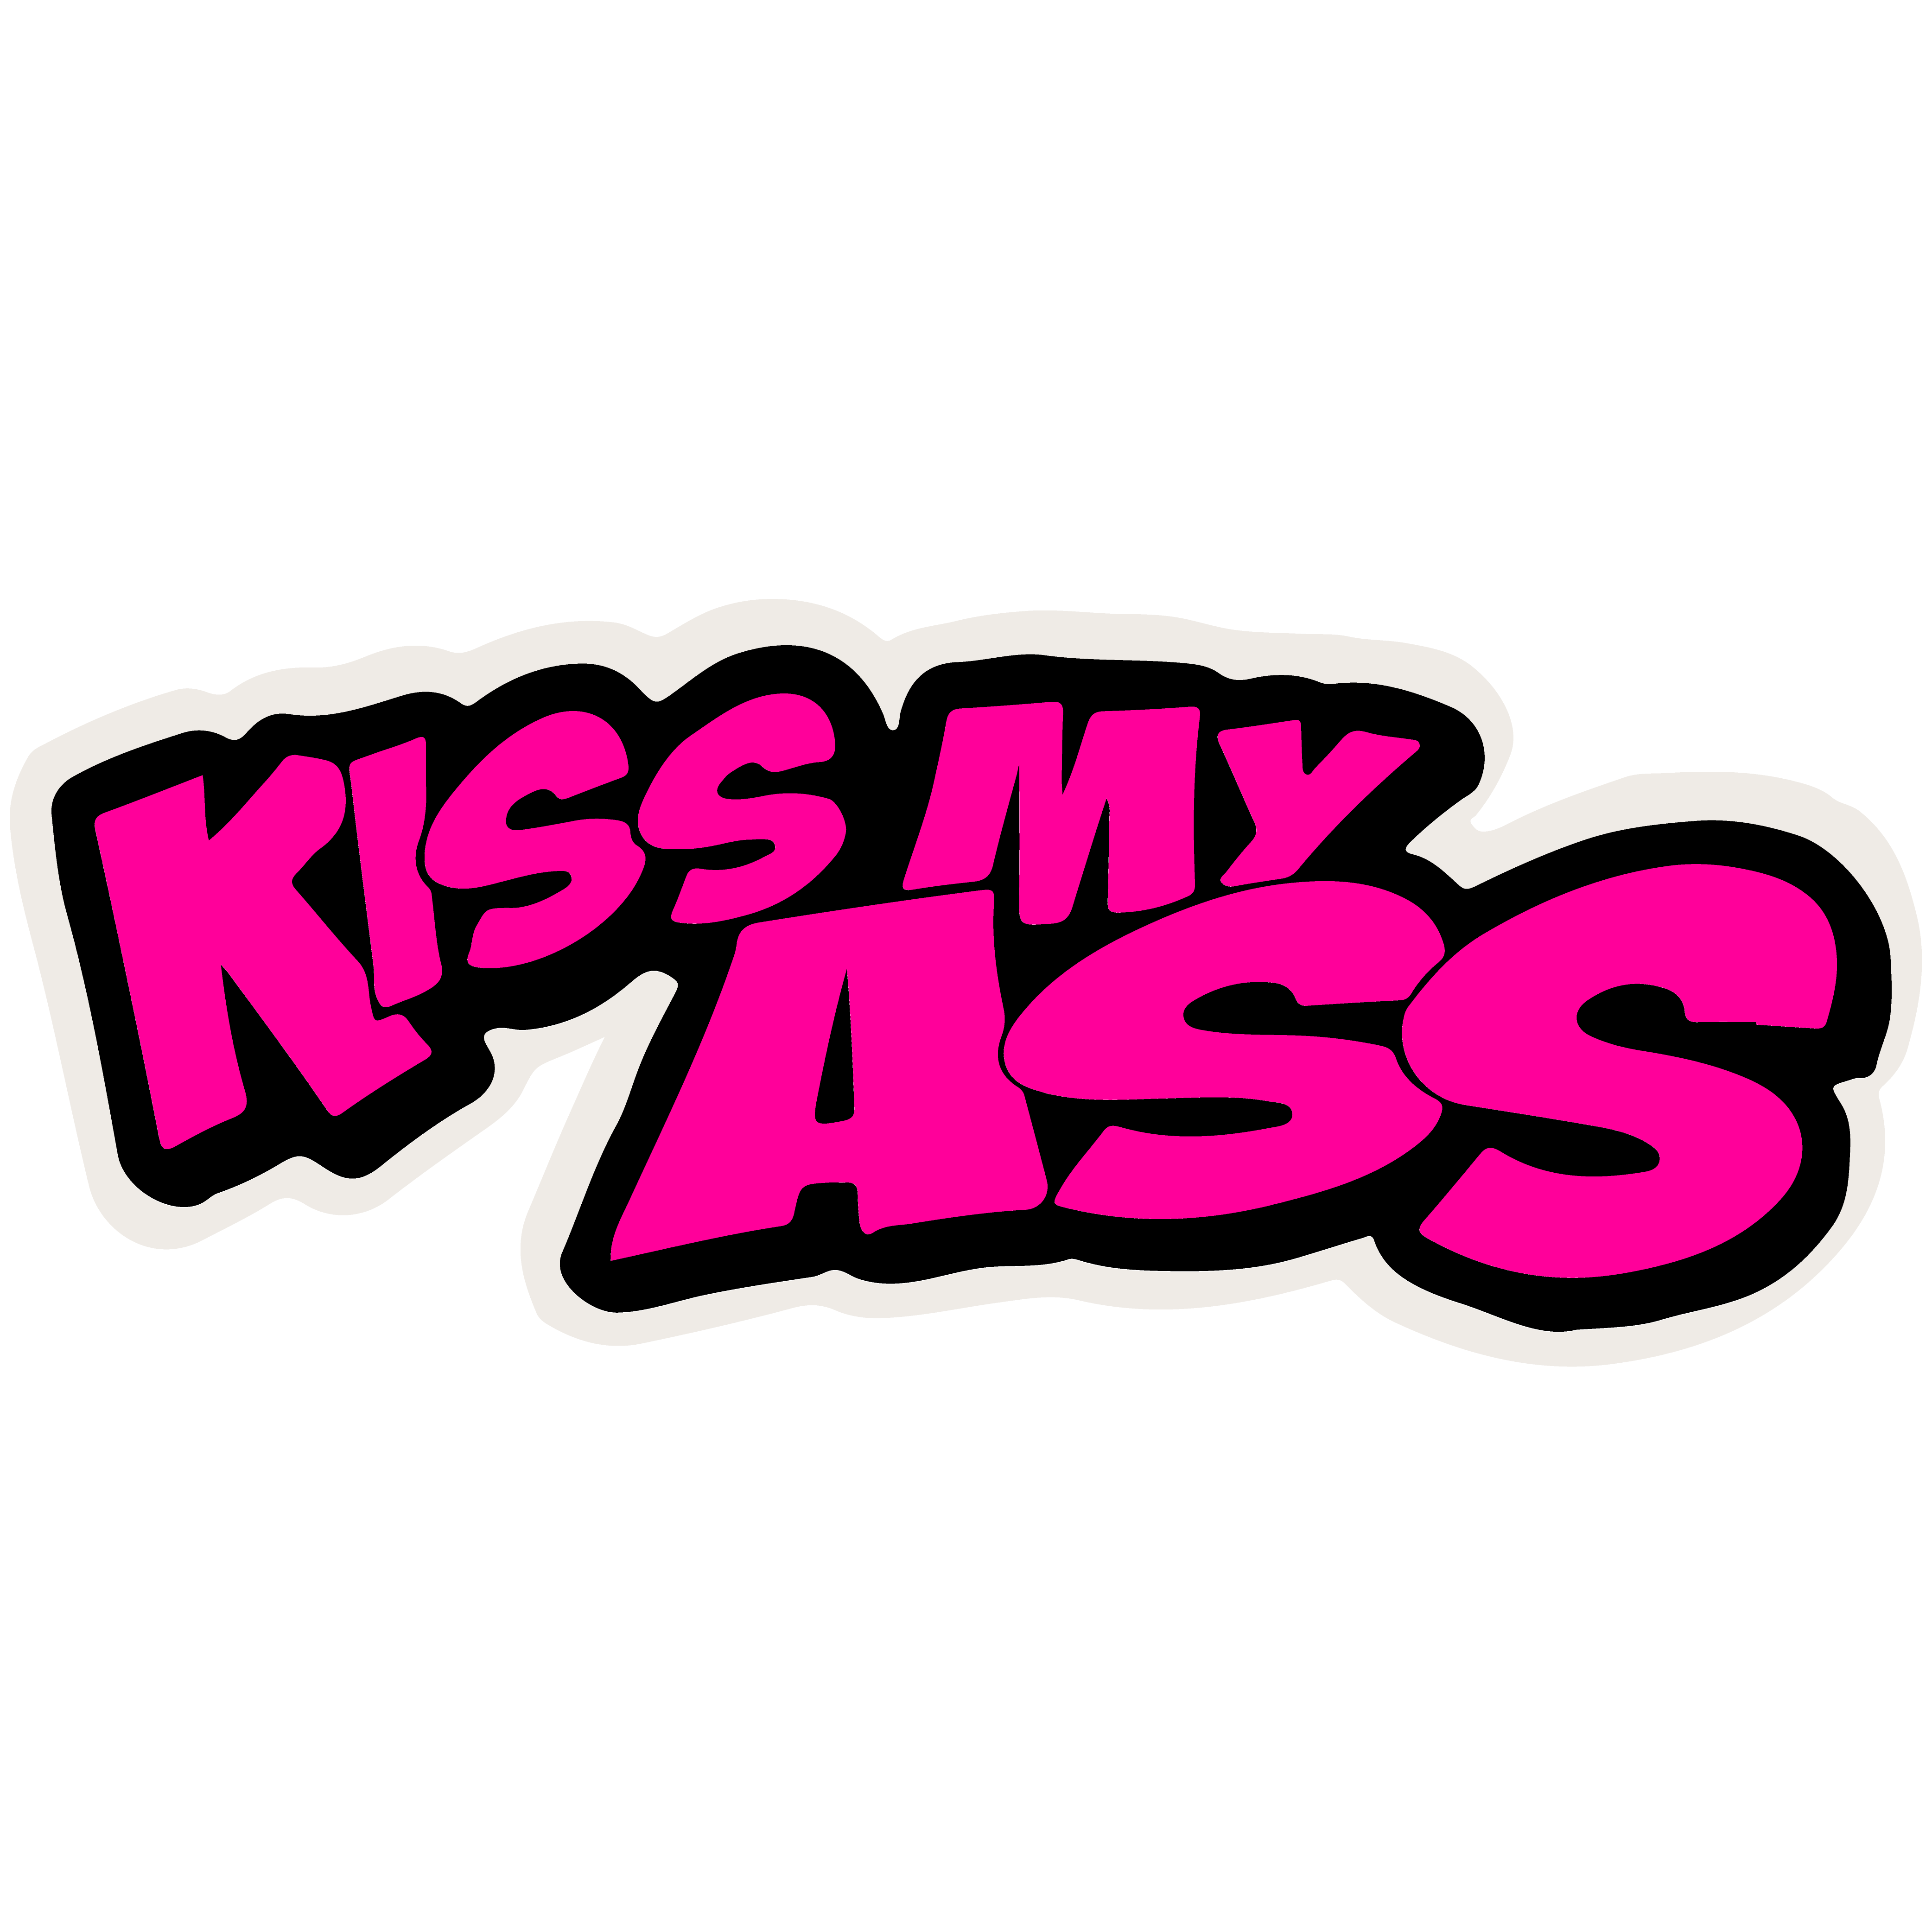 Butt patch "KISS MY ASS"